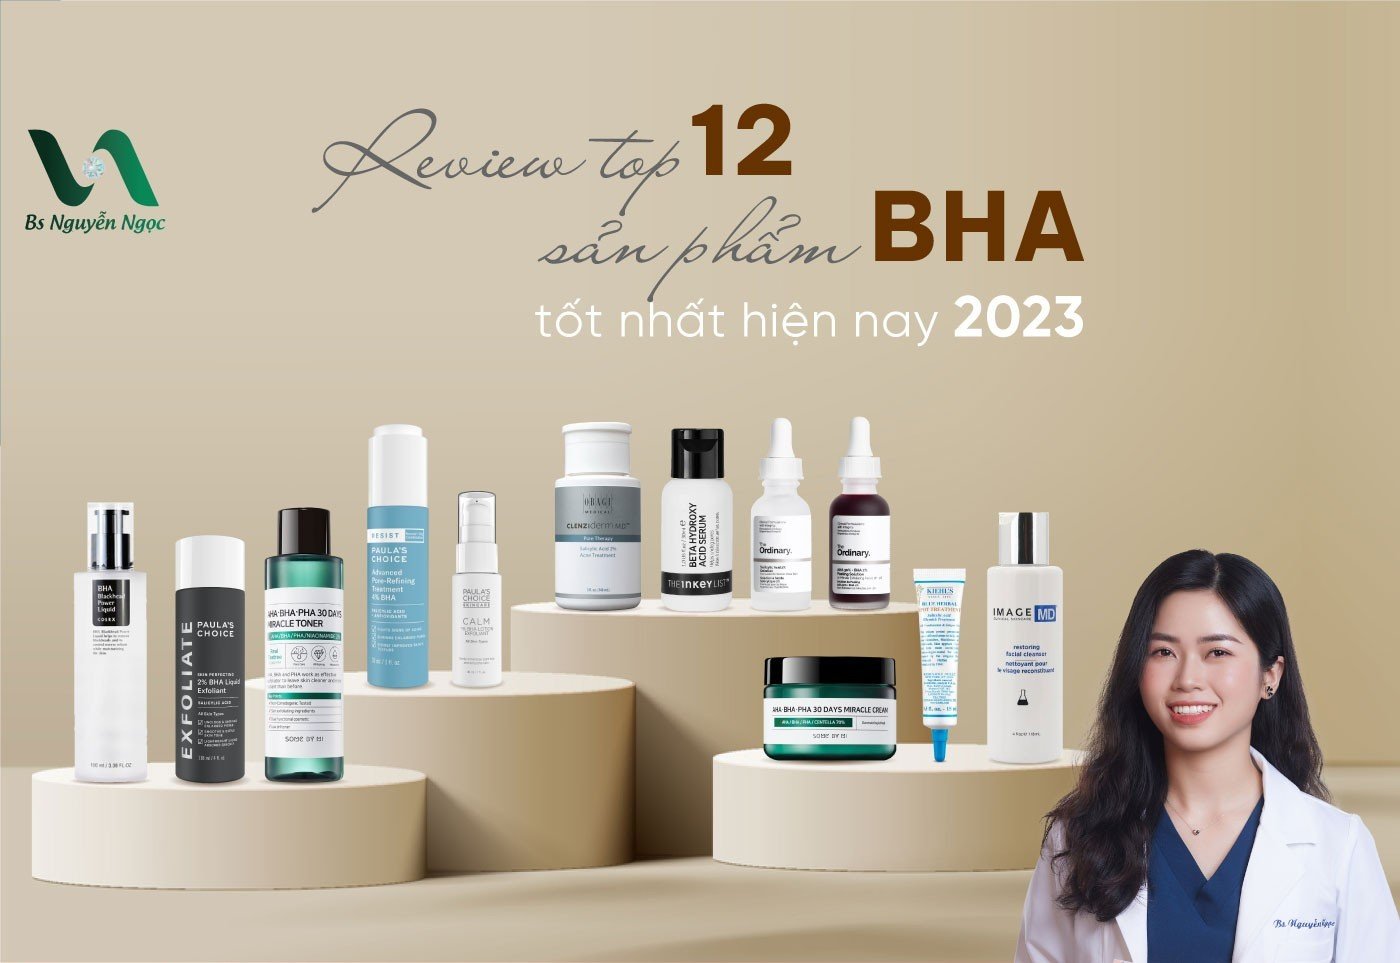 Review top 12 sản phẩm BHA tốt nhất hiện nay 2023